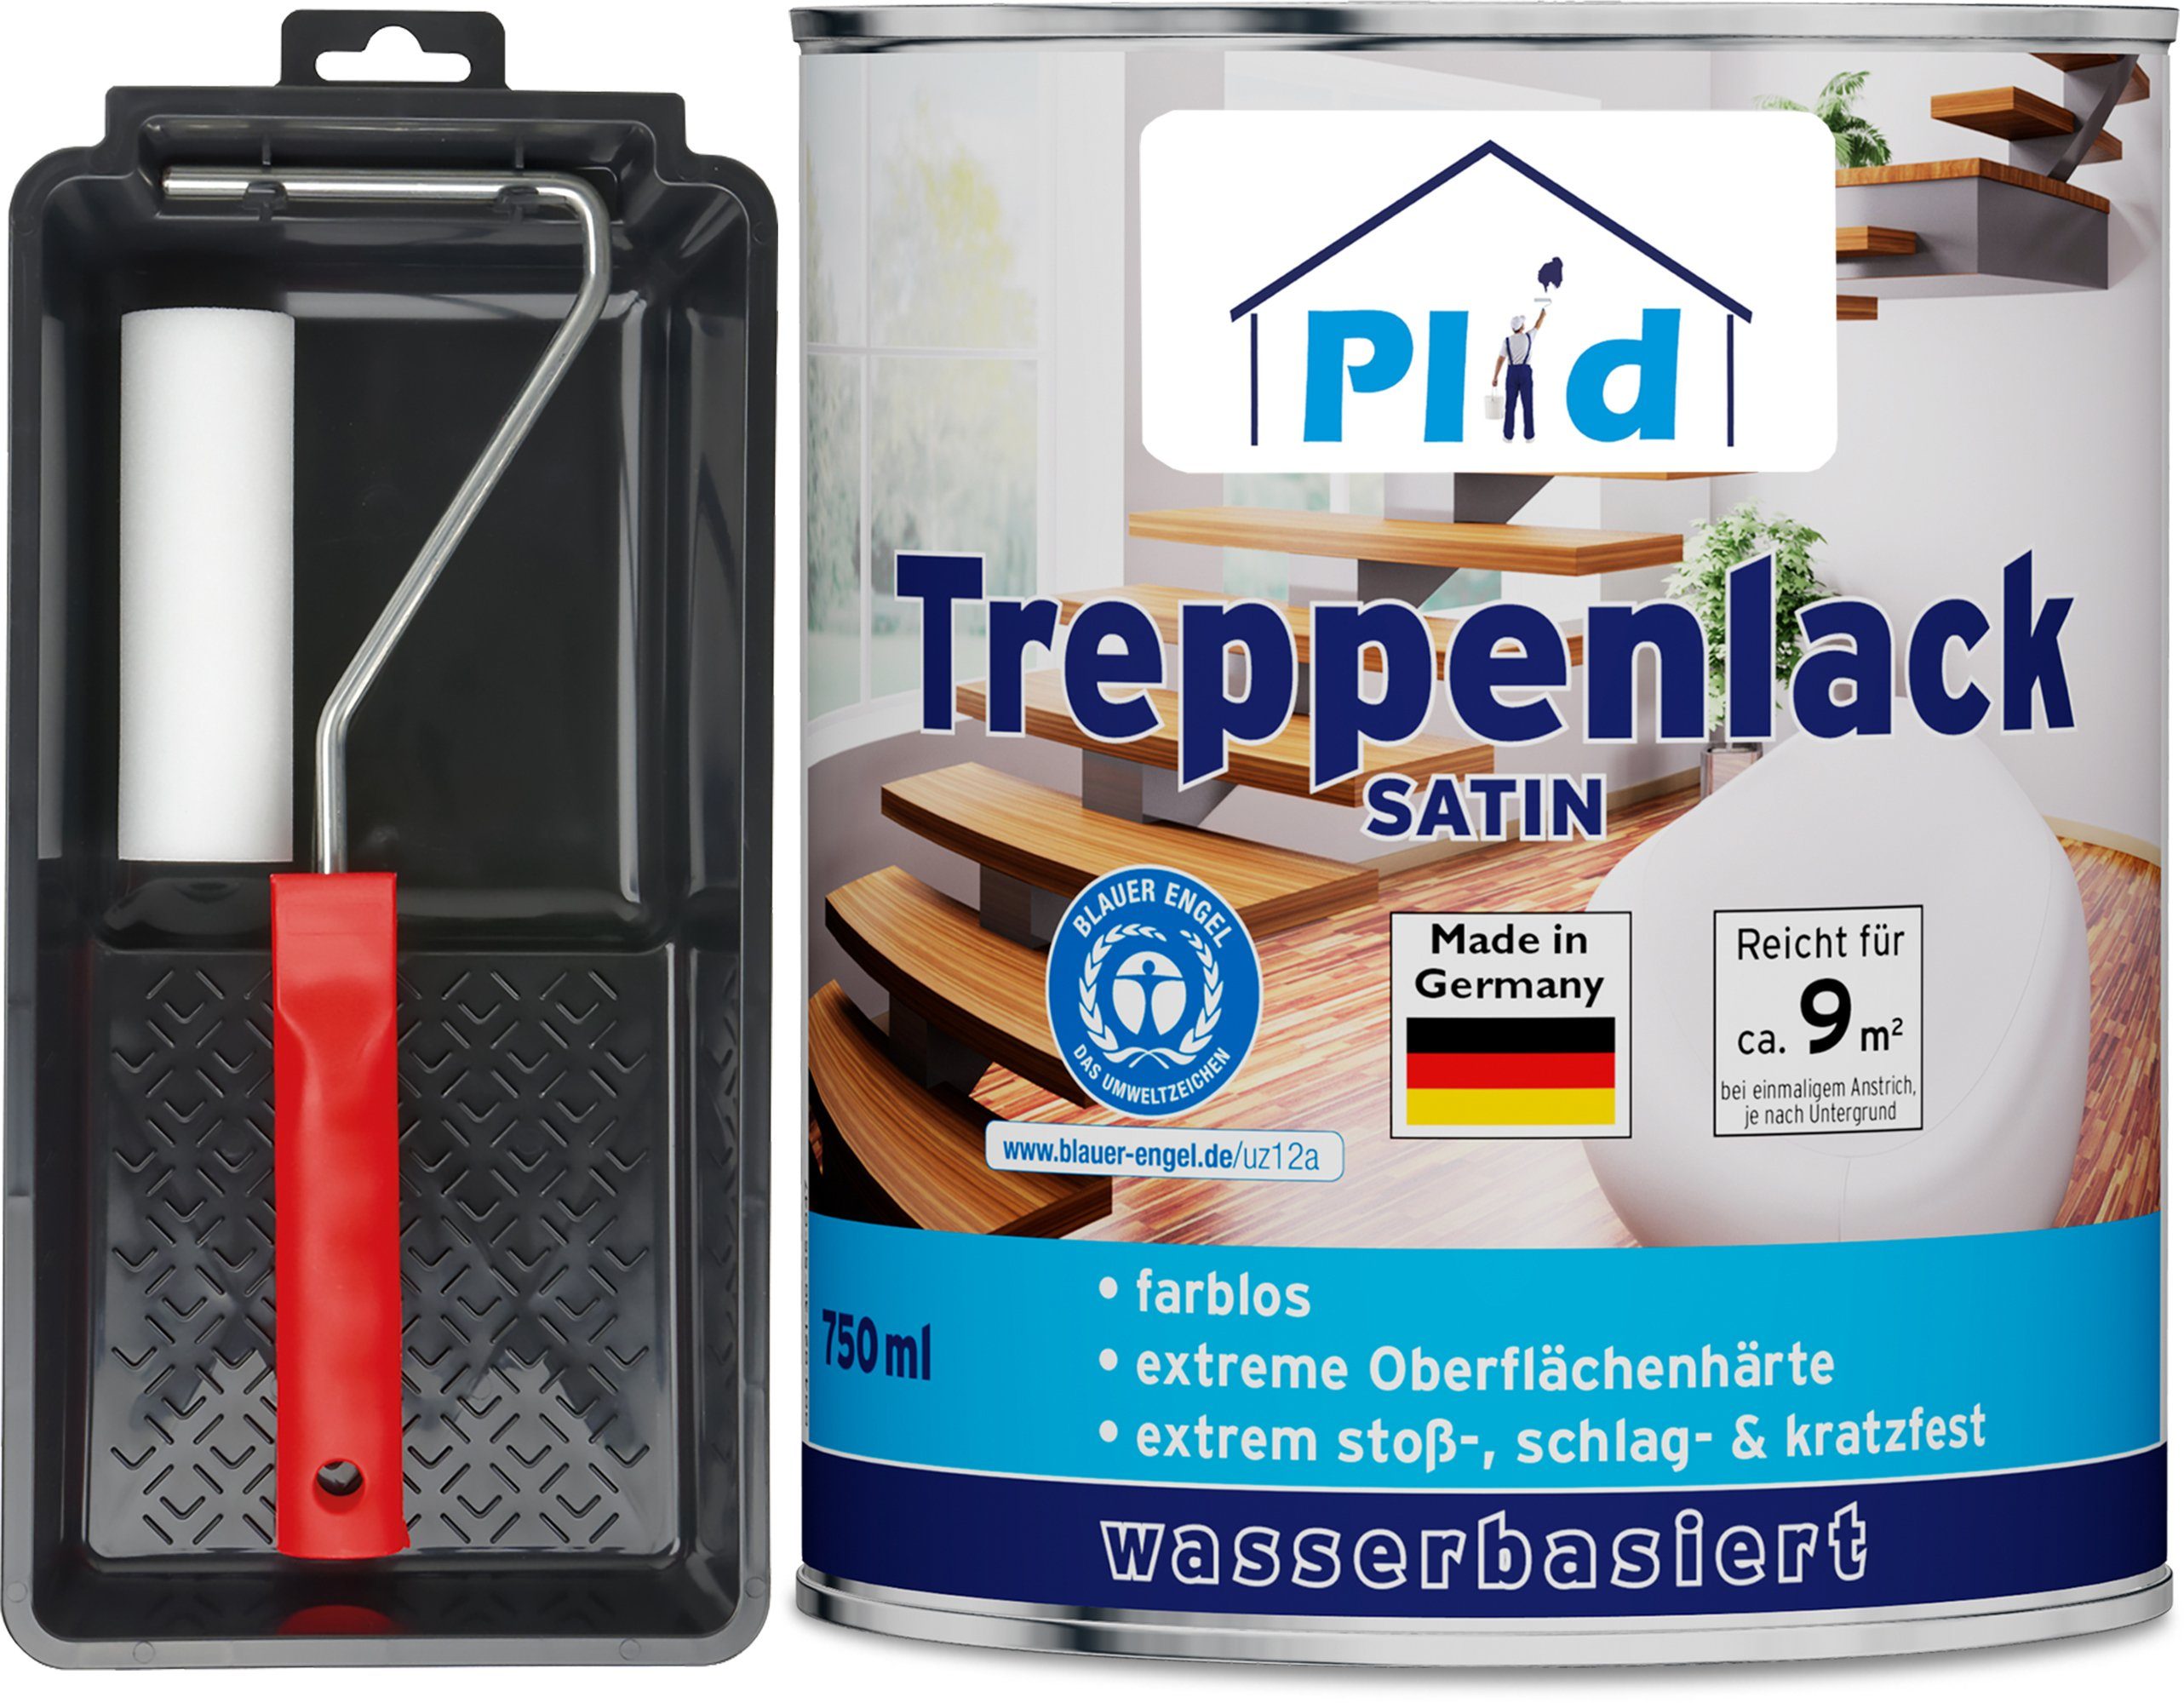 plid Treppen- und Parkettlack Premium Treppenlack Treppensiegel Klarlack Holzsiegel Set, Schnelltrocknend Farblos - Satin